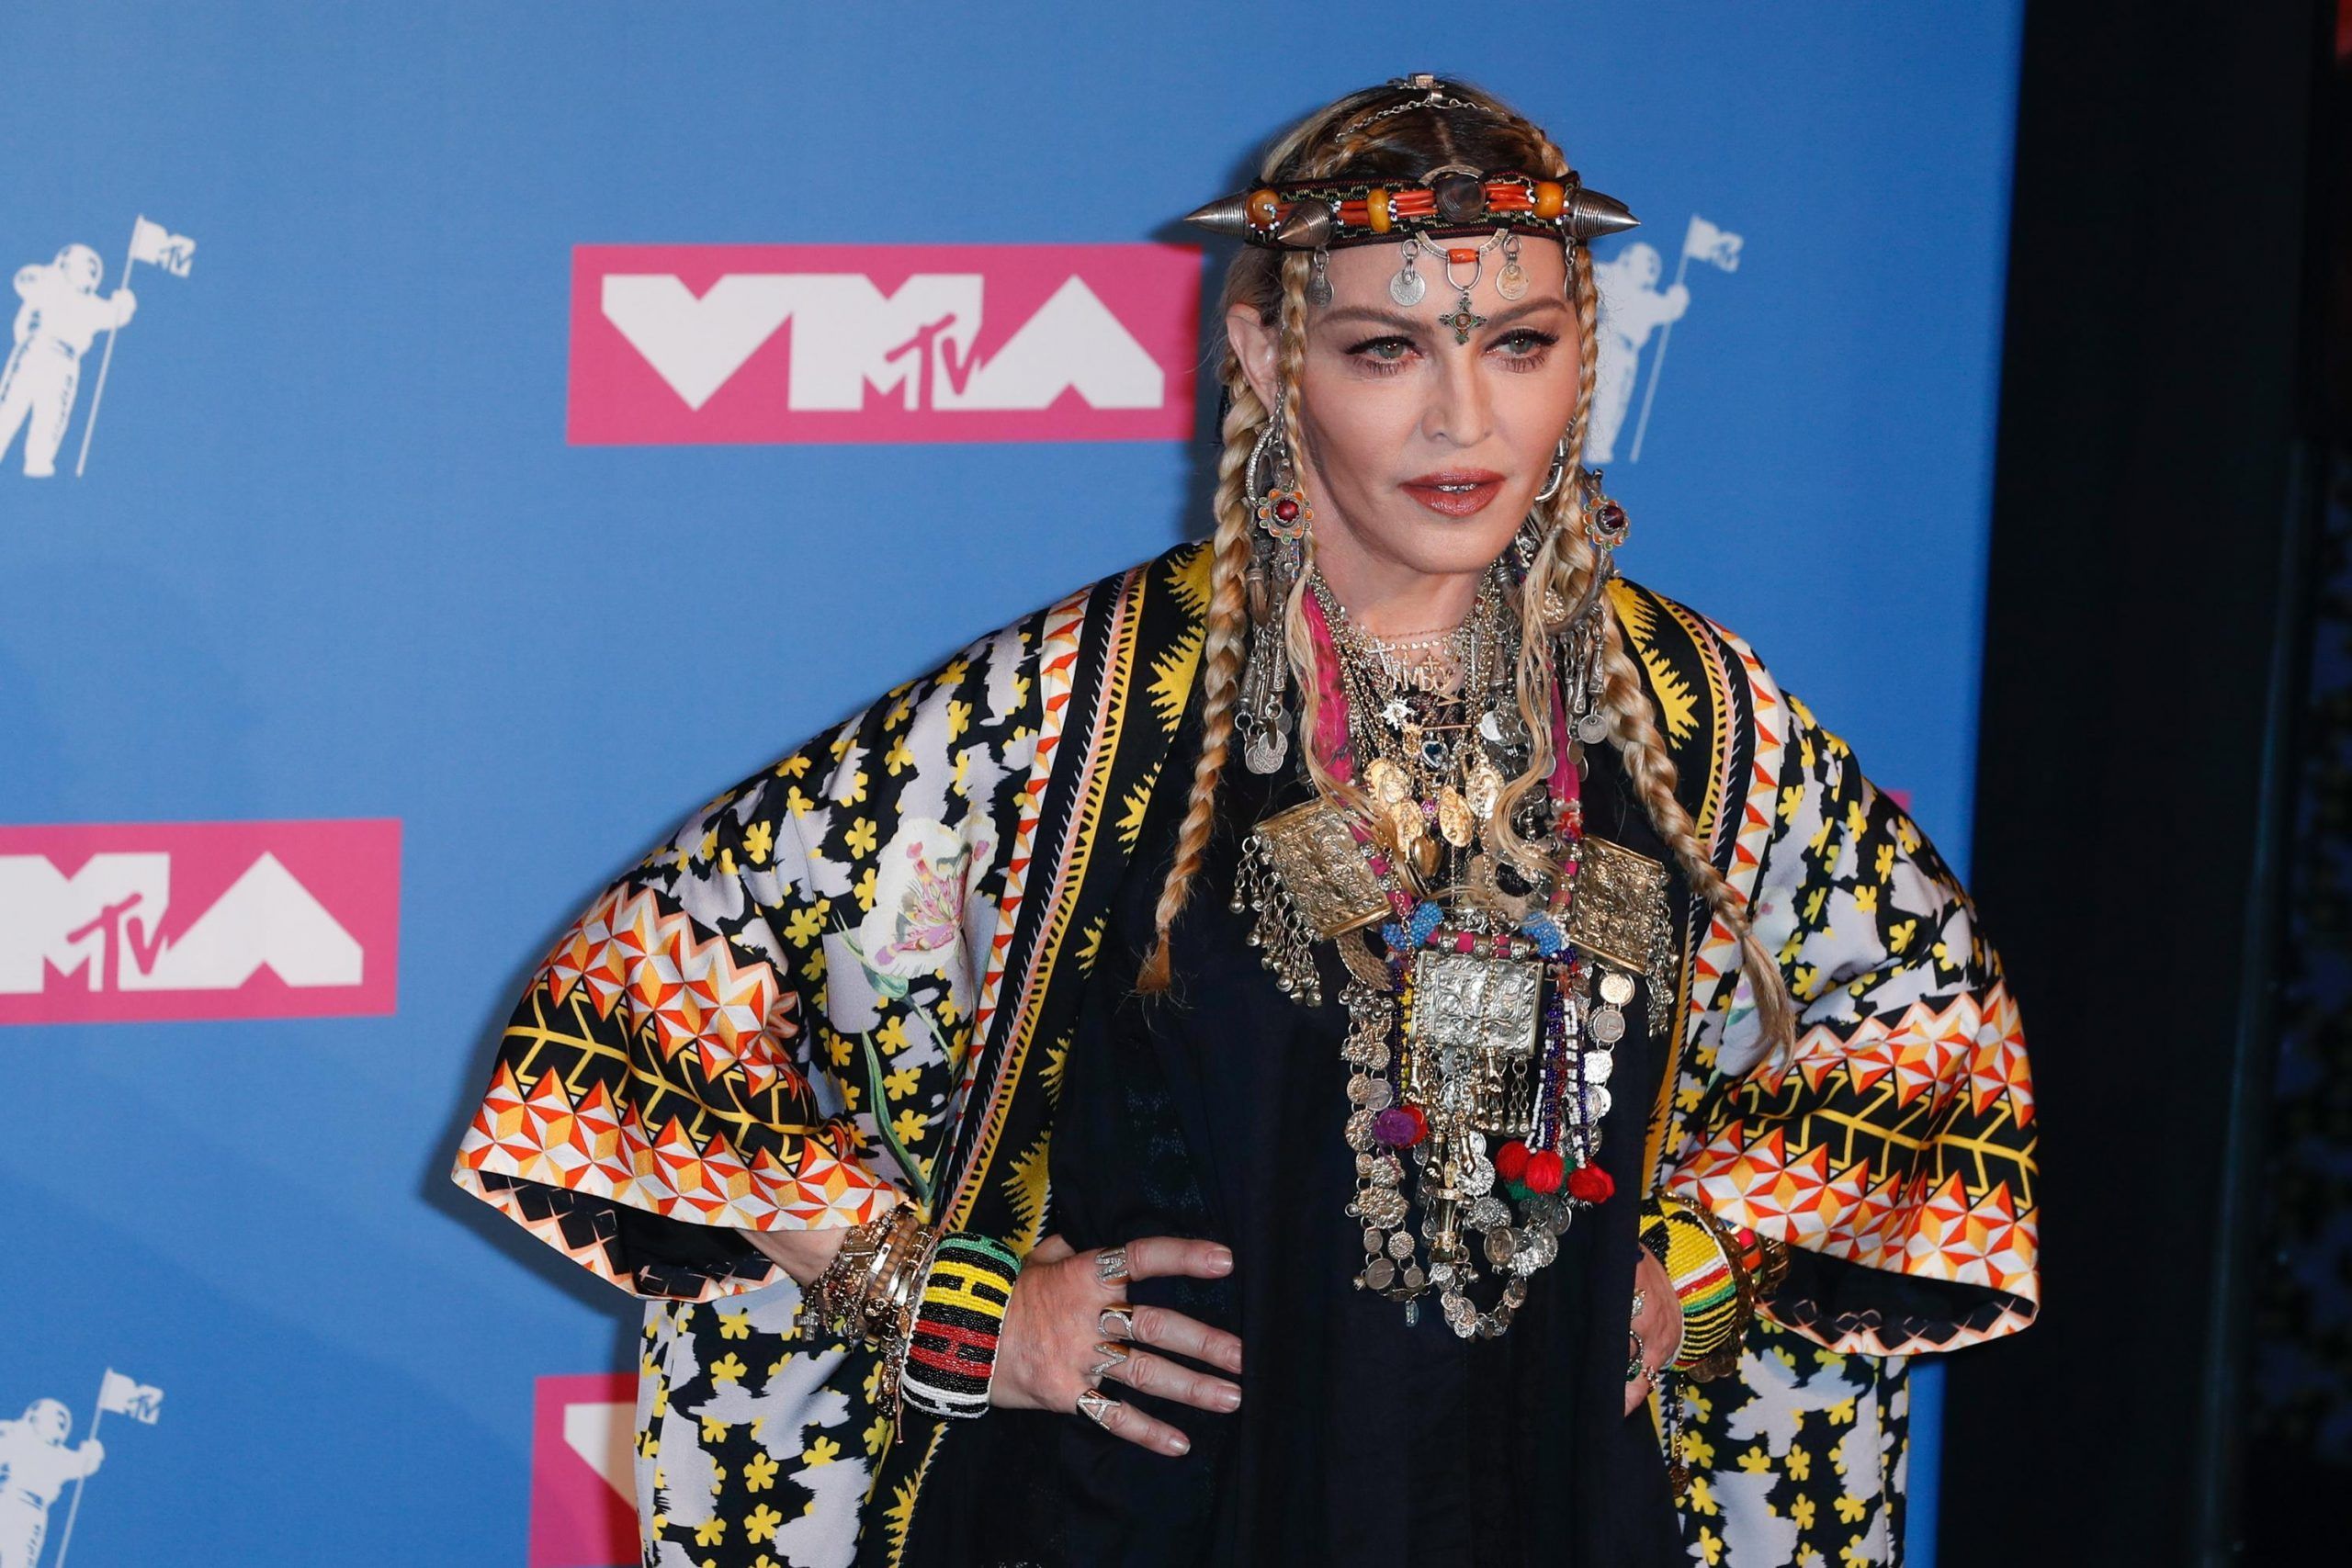 Madonna mostra un corpo ‘imperfetto’ e scatena le polemiche